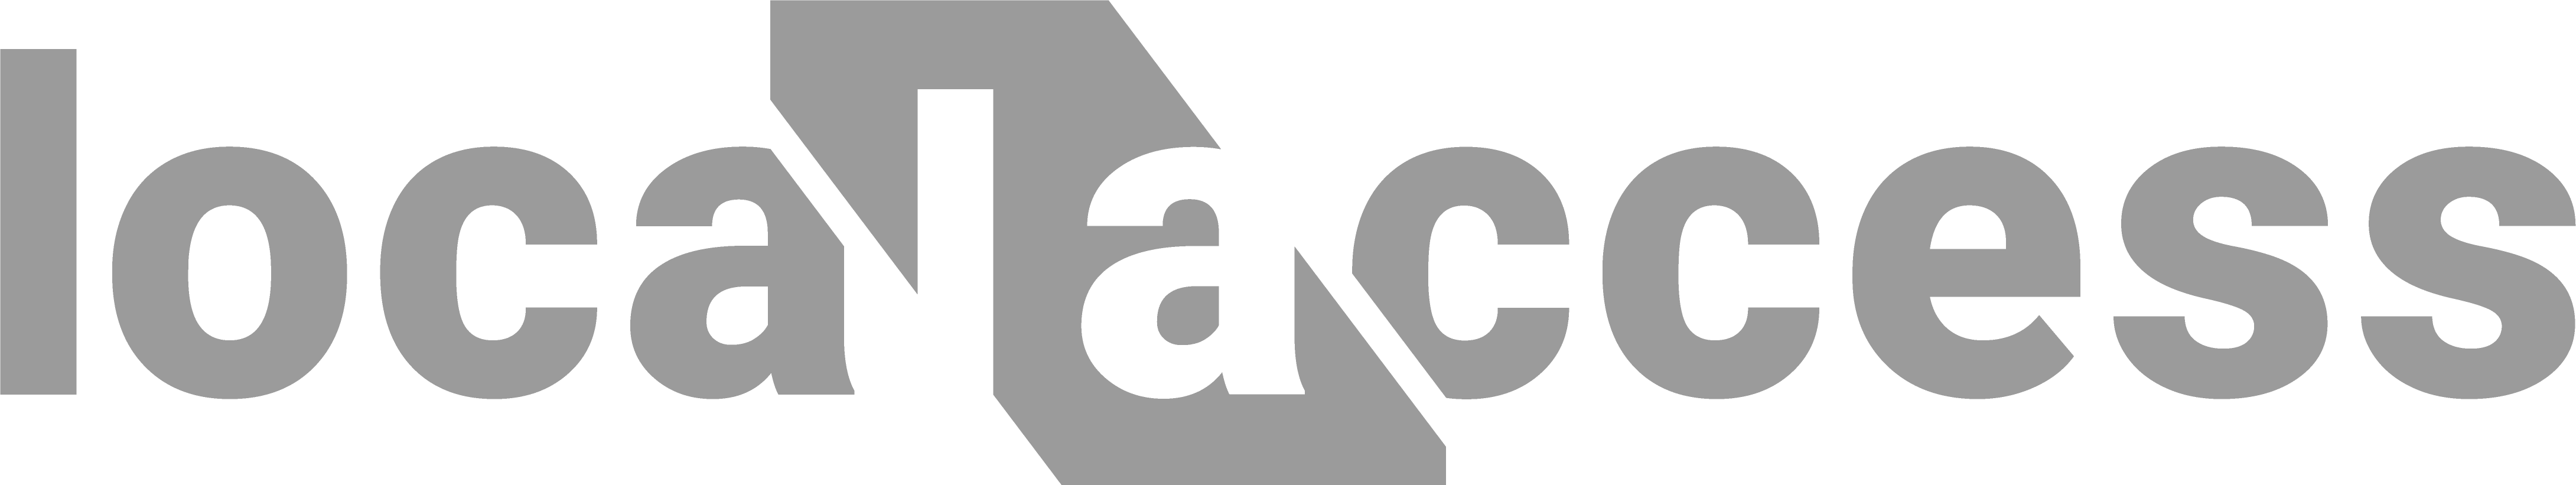 Local Access Logo